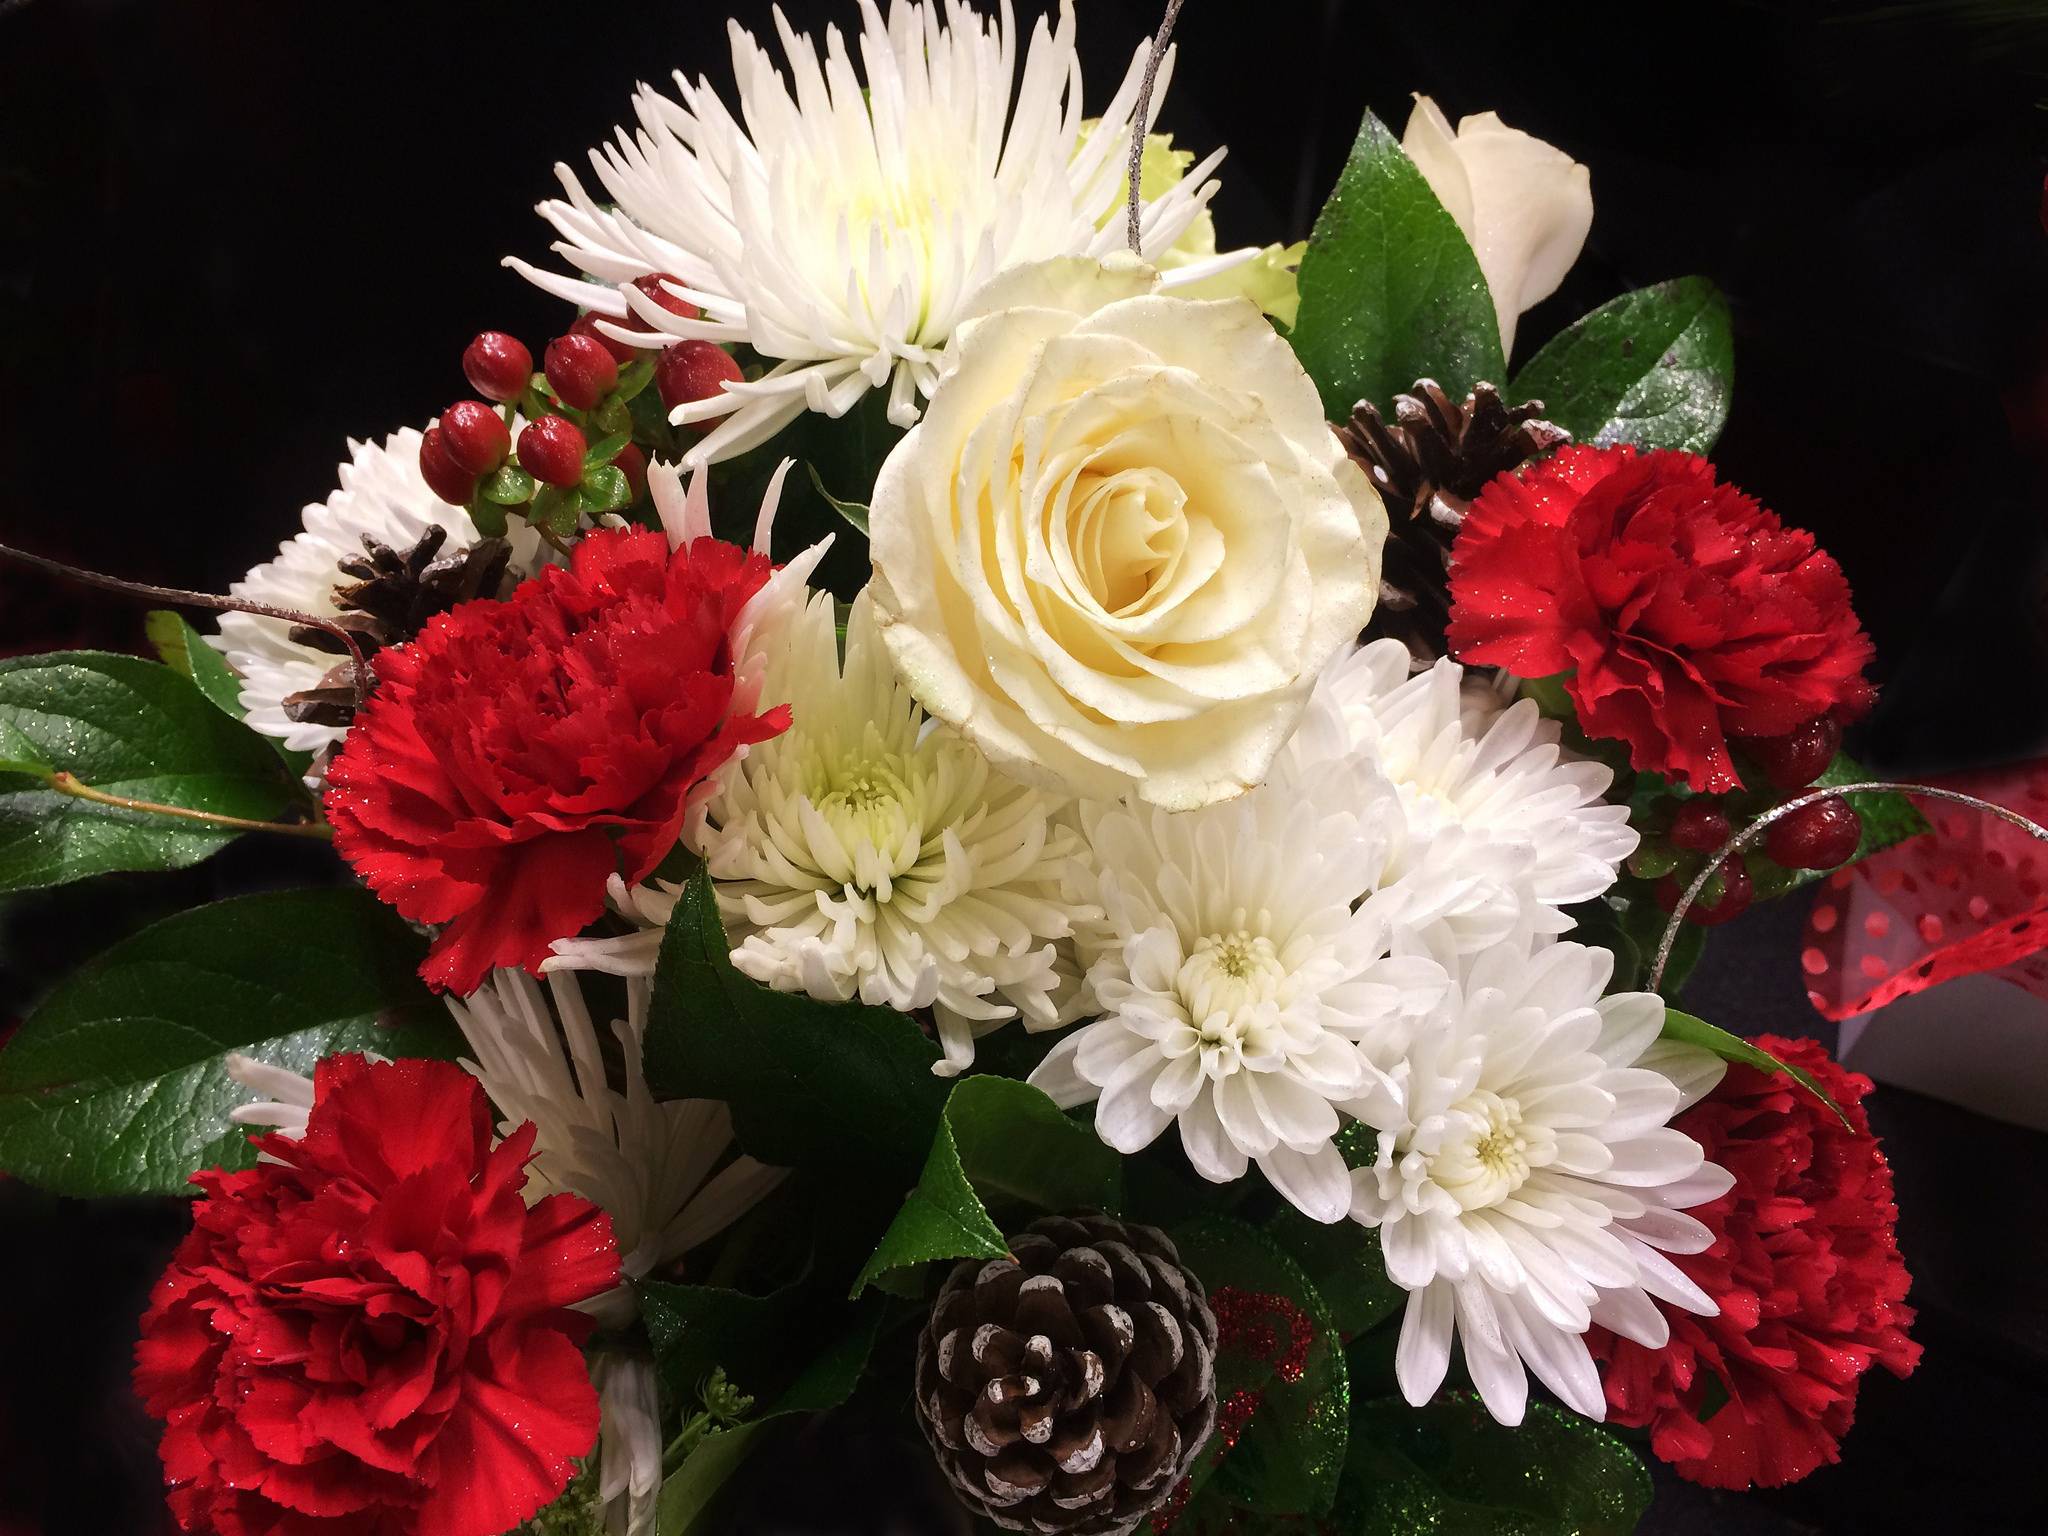 Обои флора цветы красивый букет на рабочий стол